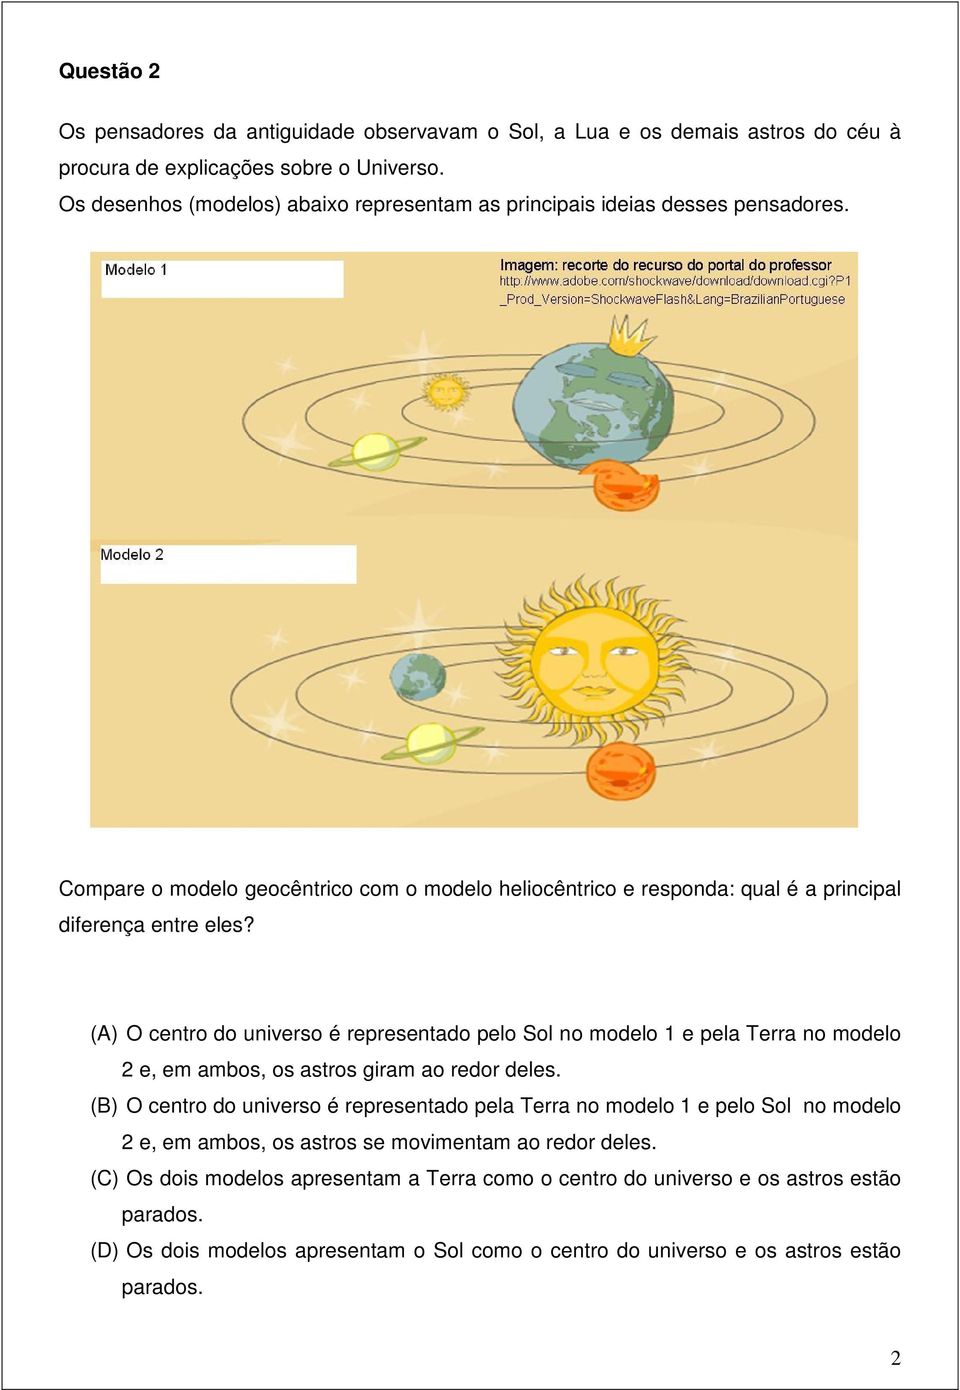 (A) O centro do universo é representado pelo Sol no modelo 1 e pela Terra no modelo 2 e, em ambos, os astros giram ao redor deles.